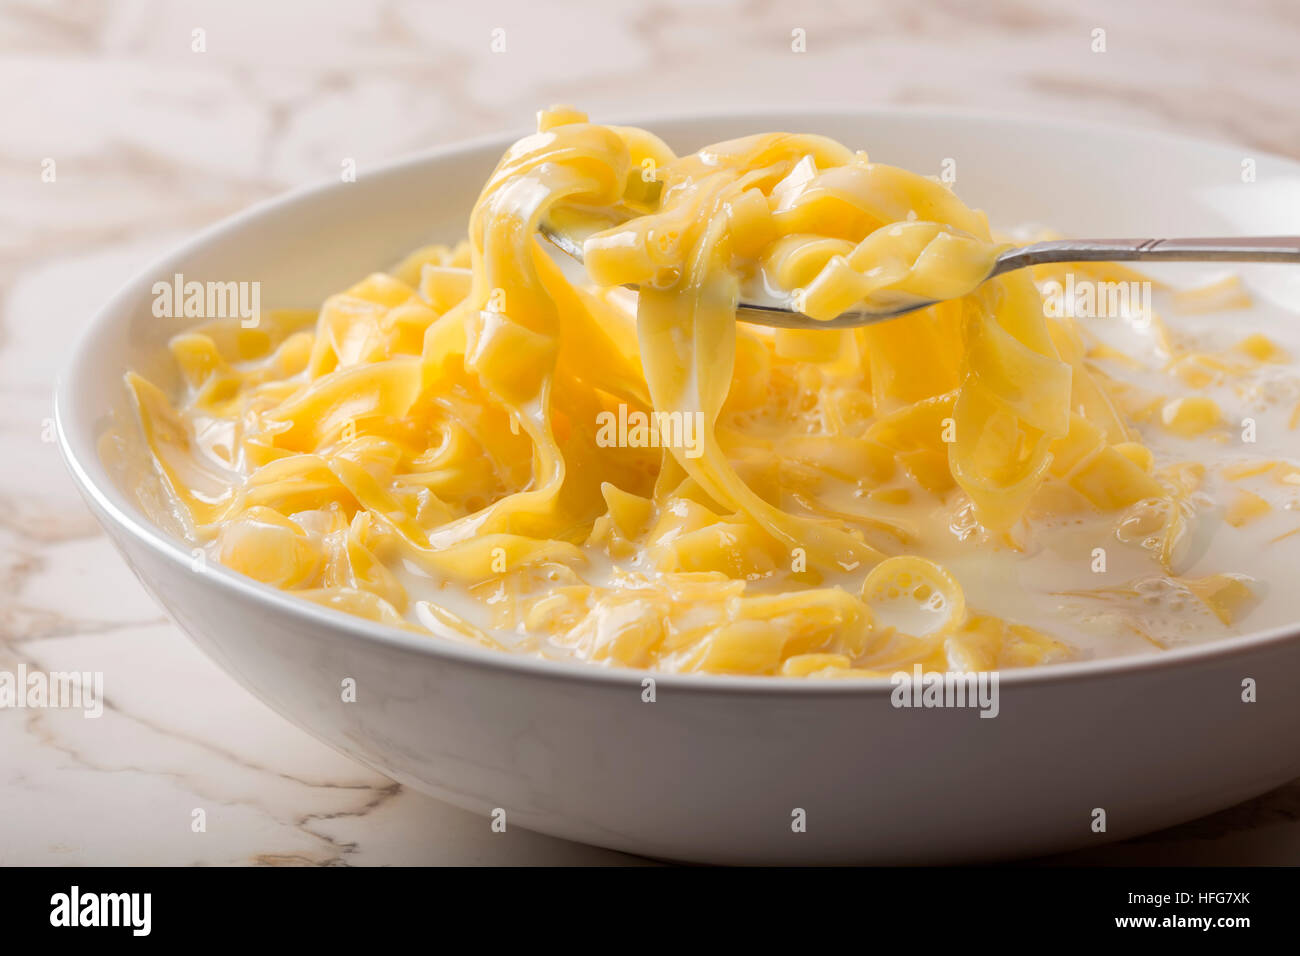 Cuillère à nouilles (tagliatelle) avec du lait et le sucre dans un bol en céramique blanche Banque D'Images